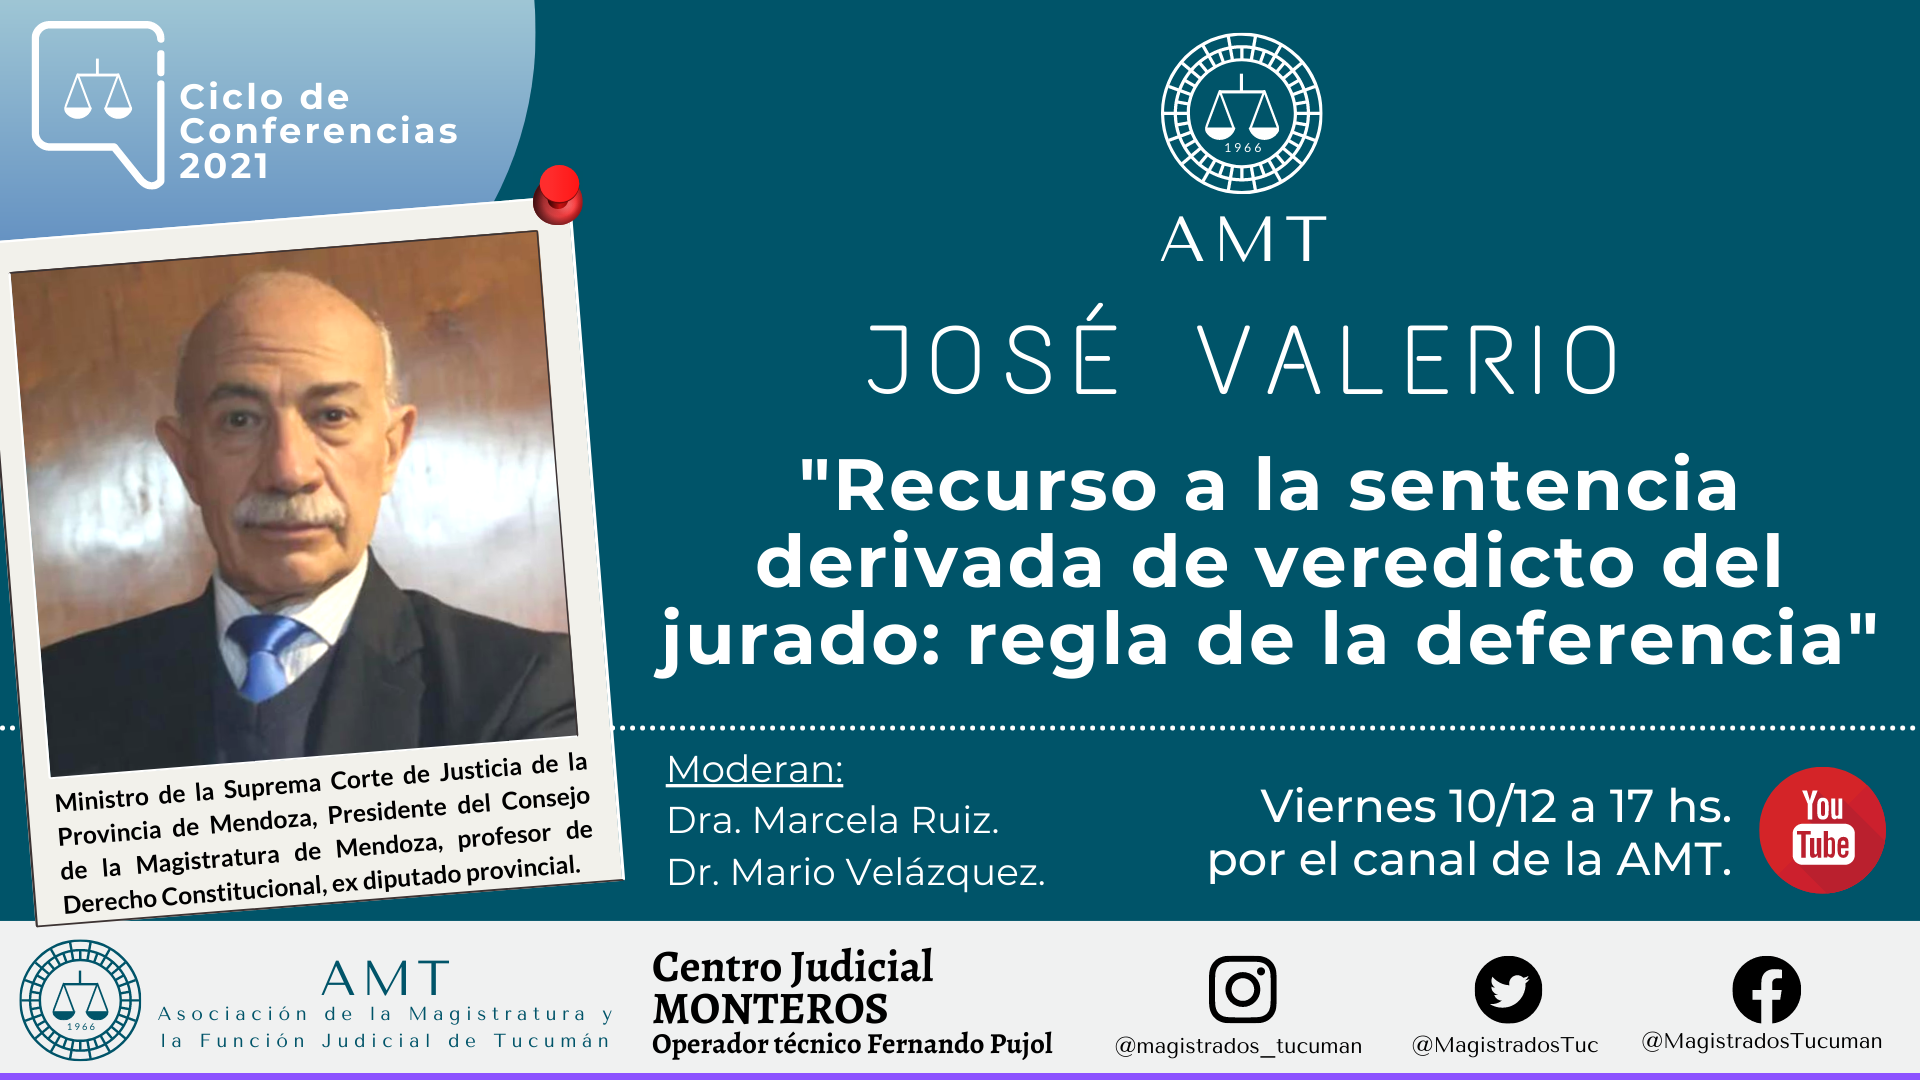 Vuelva a ver la conferencia de José Valerio «Recurso a la sentencia derivada de veredicto del jurado»